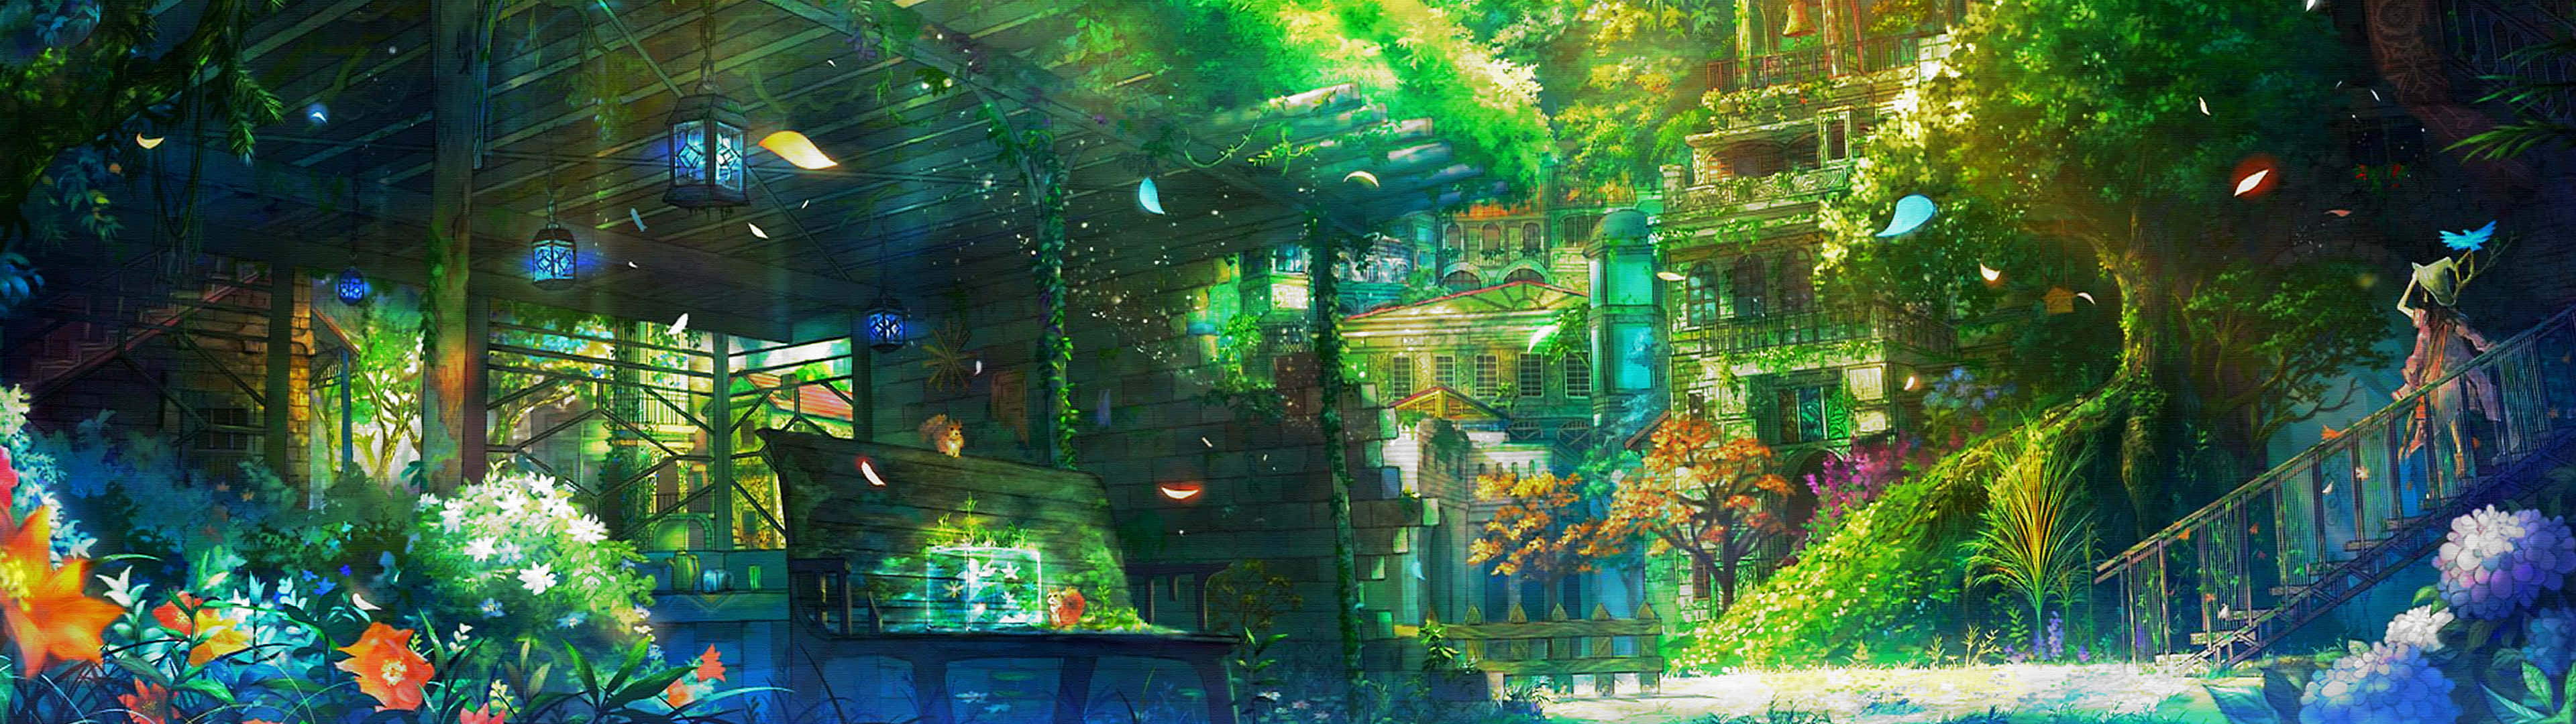 Ljusstarktfärgglatt Anime Hd-bakgrundsbild Wallpaper